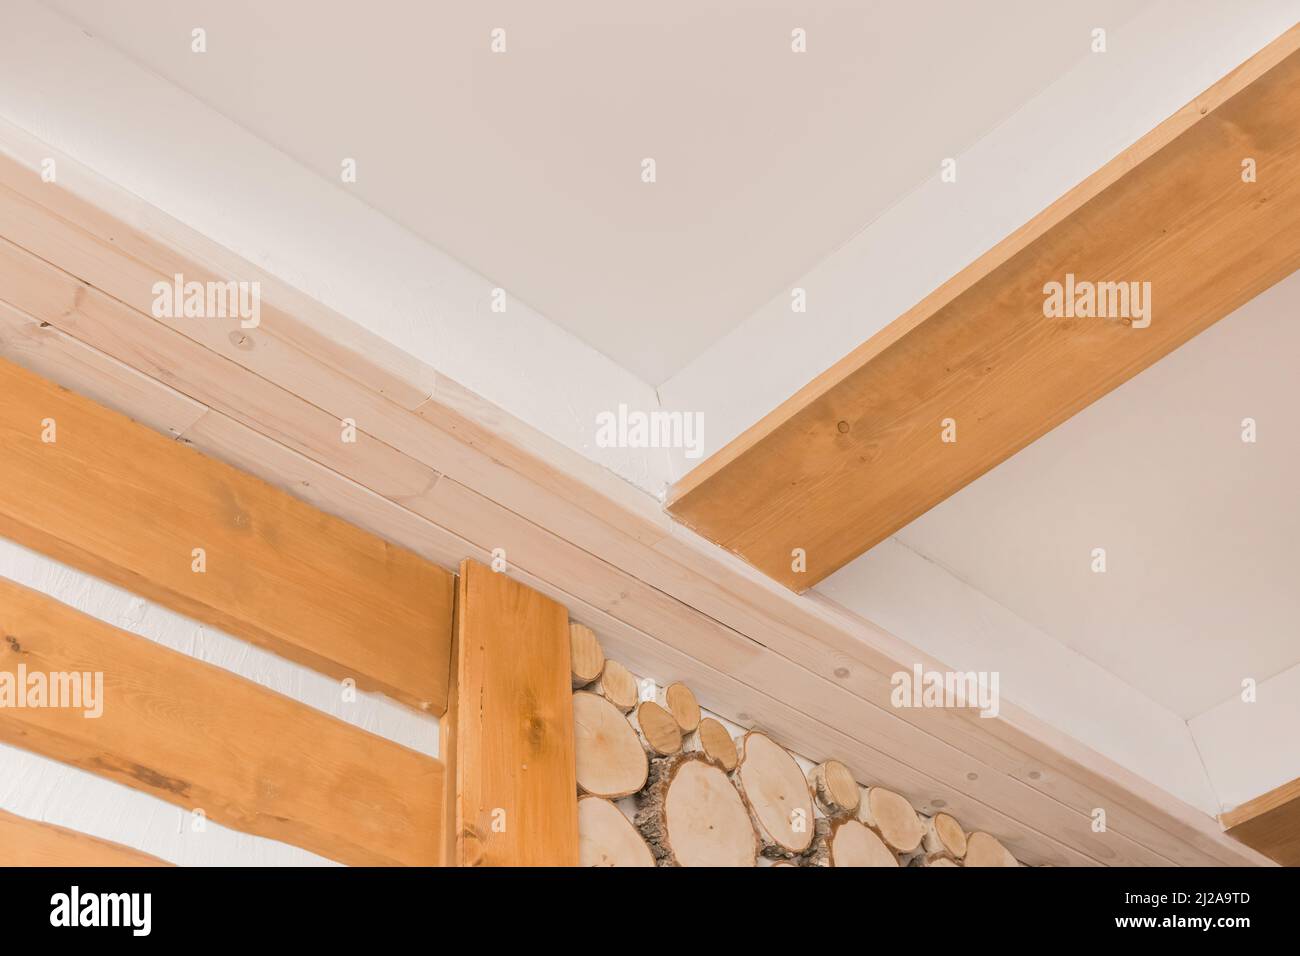 Holzbretter abstraktes Deckendesign auf dem Hintergrund der weißen Wandstruktur. Stockfoto